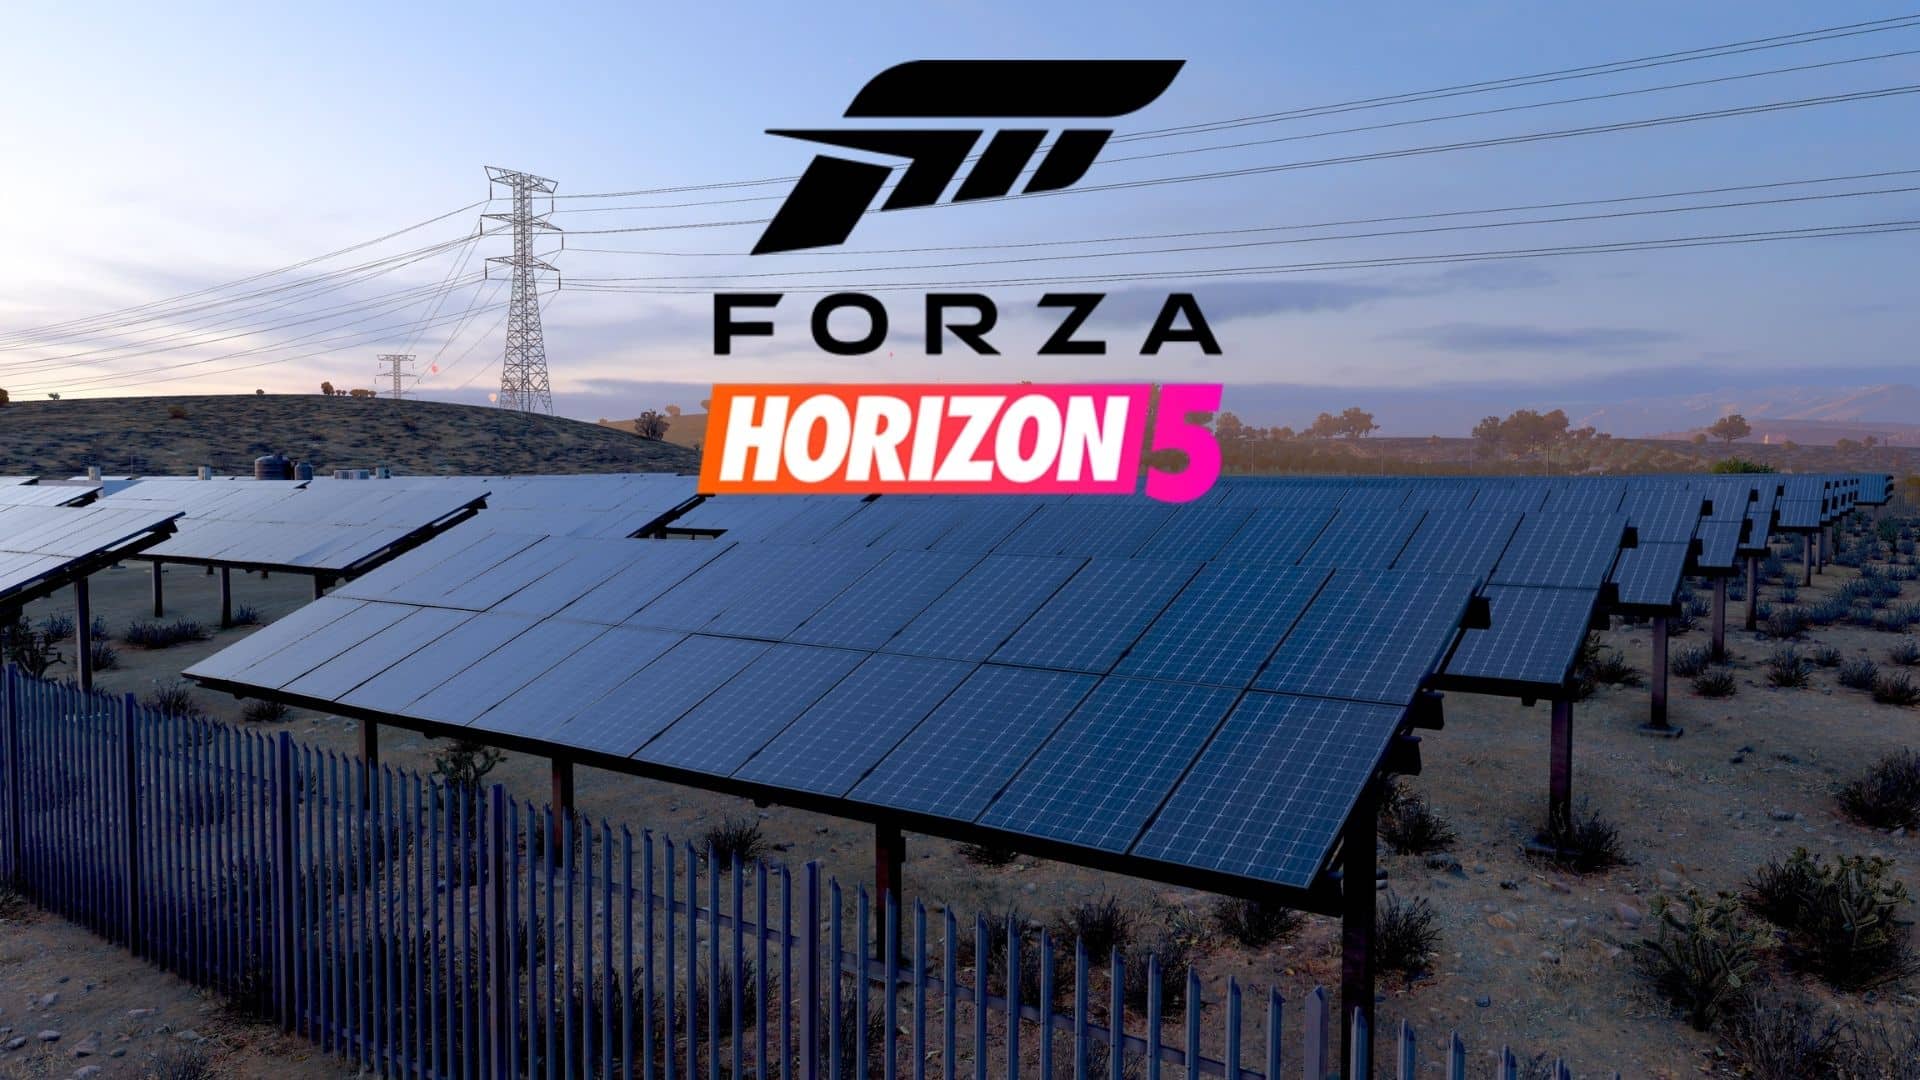 forza horizon 5 logo with solar panels